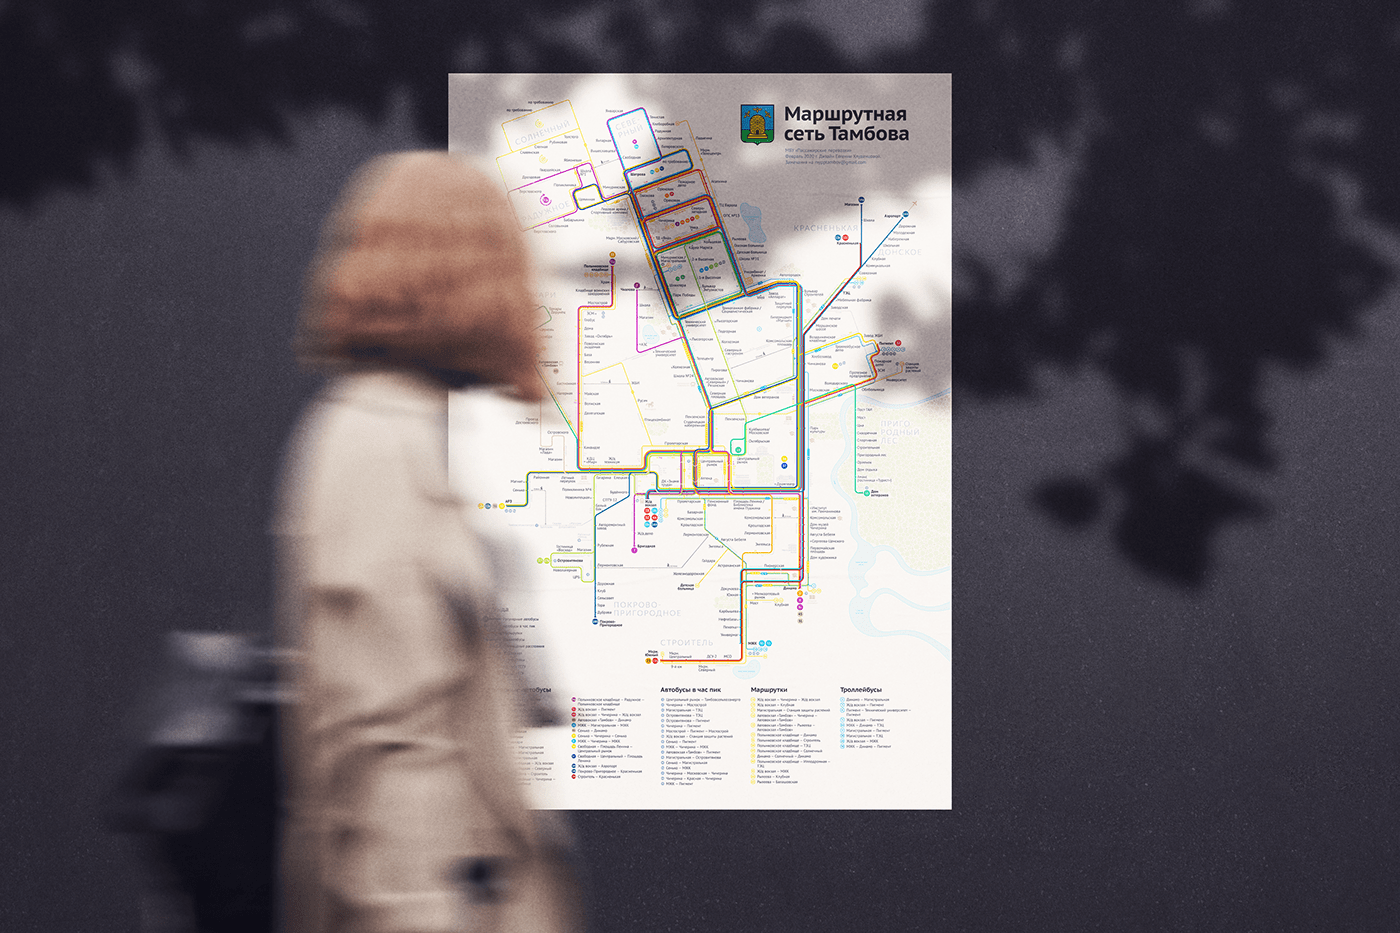 bus map design navigation route scheme Transport map transport scheme transpost Plan tambov